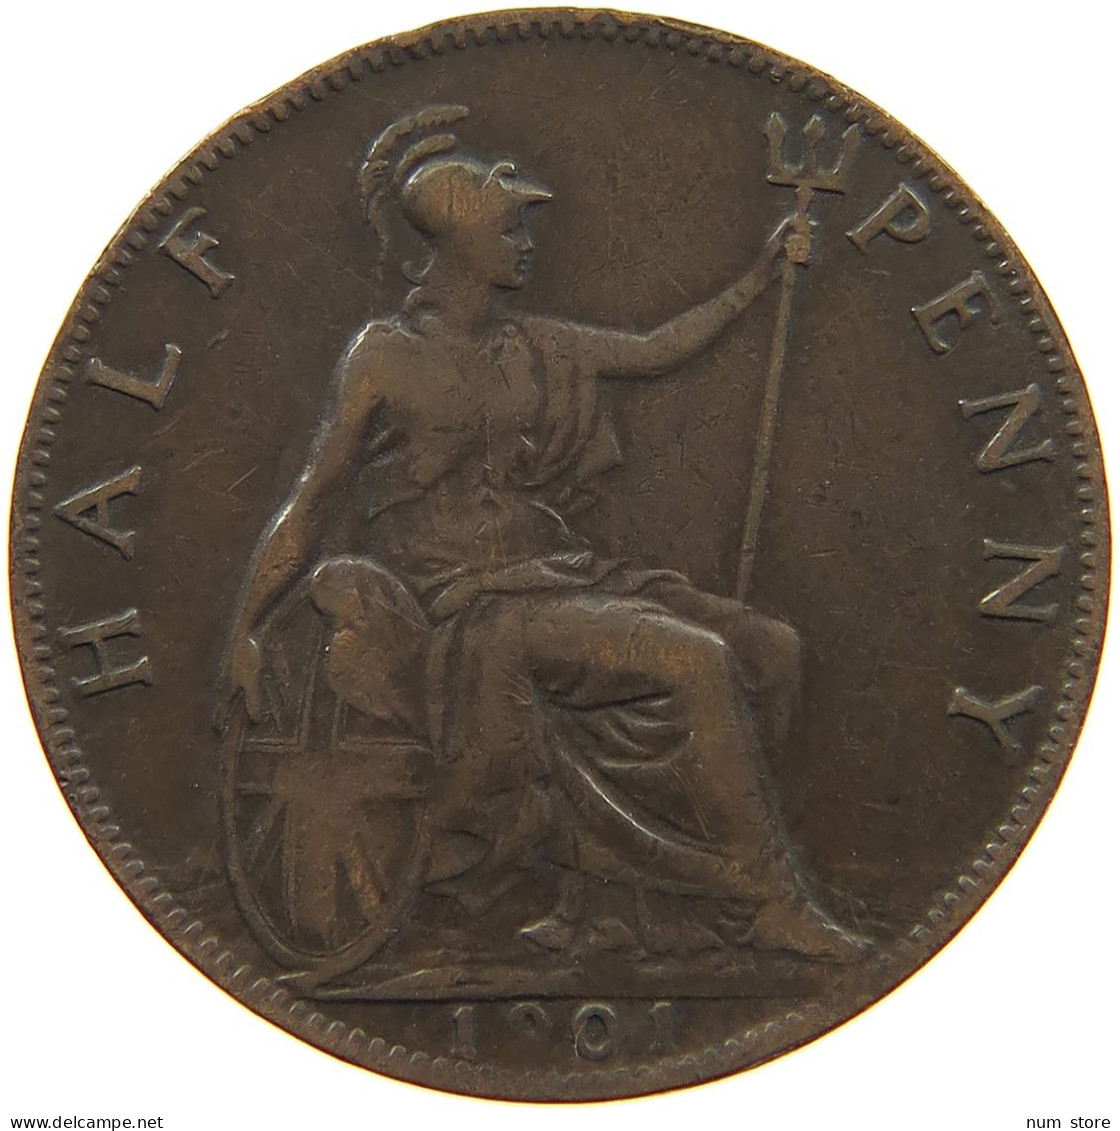 GREAT BRITAIN HALFPENNY 1901 Victoria 1837-1901 #c061 0013 - C. 1/2 Penny